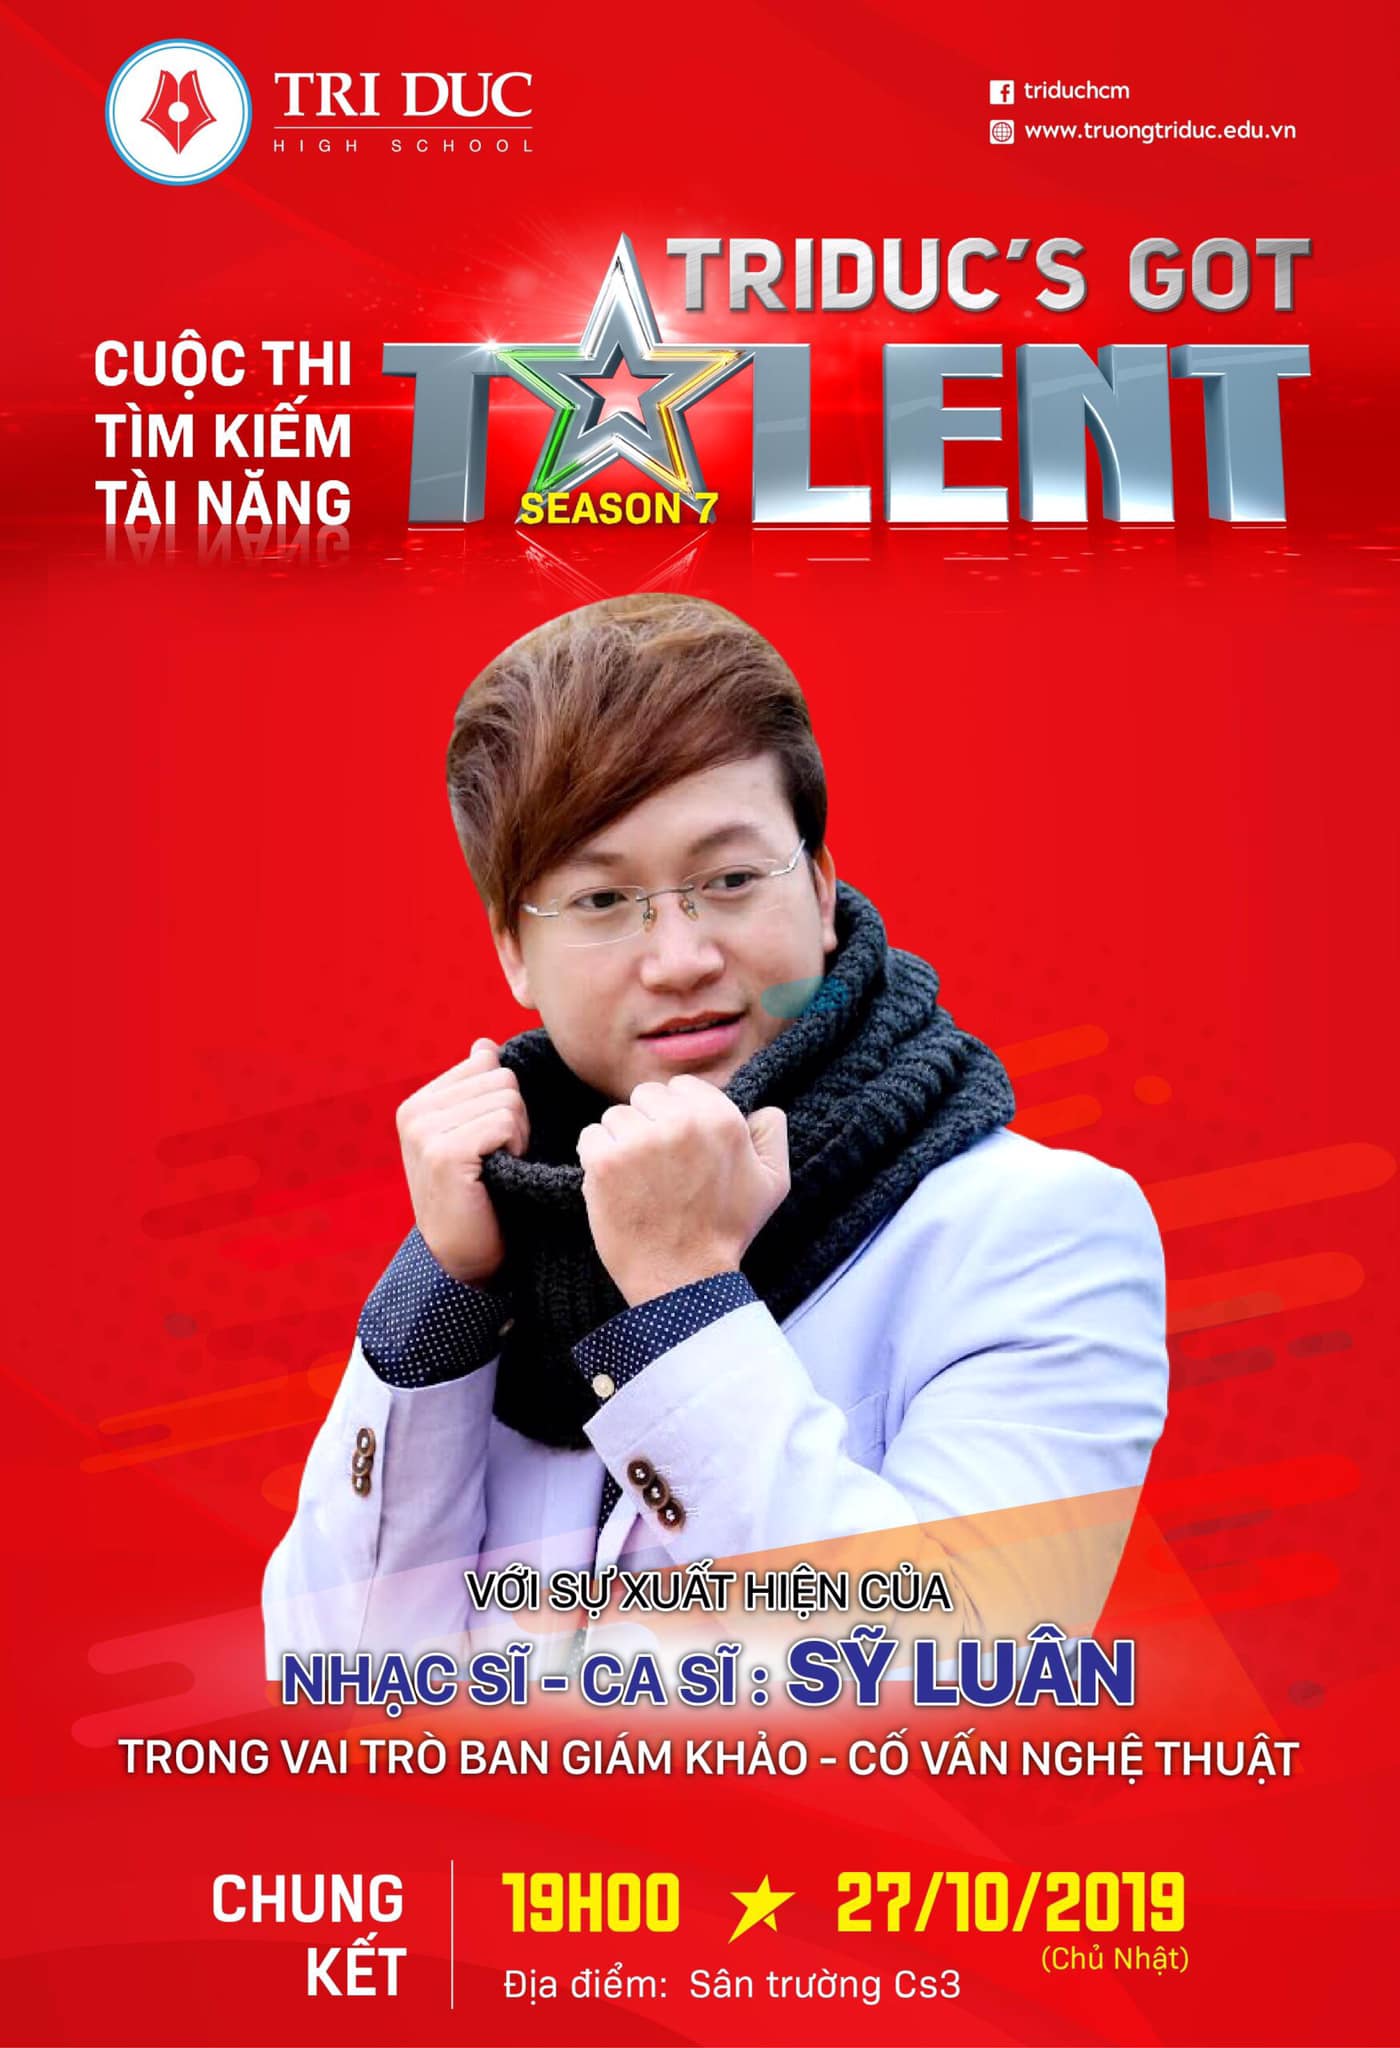 TOP 10 TriDuc’s Got Talent sẽ được cố vấn chuyên môn tại HUTECH trước Gala Chung kết 13